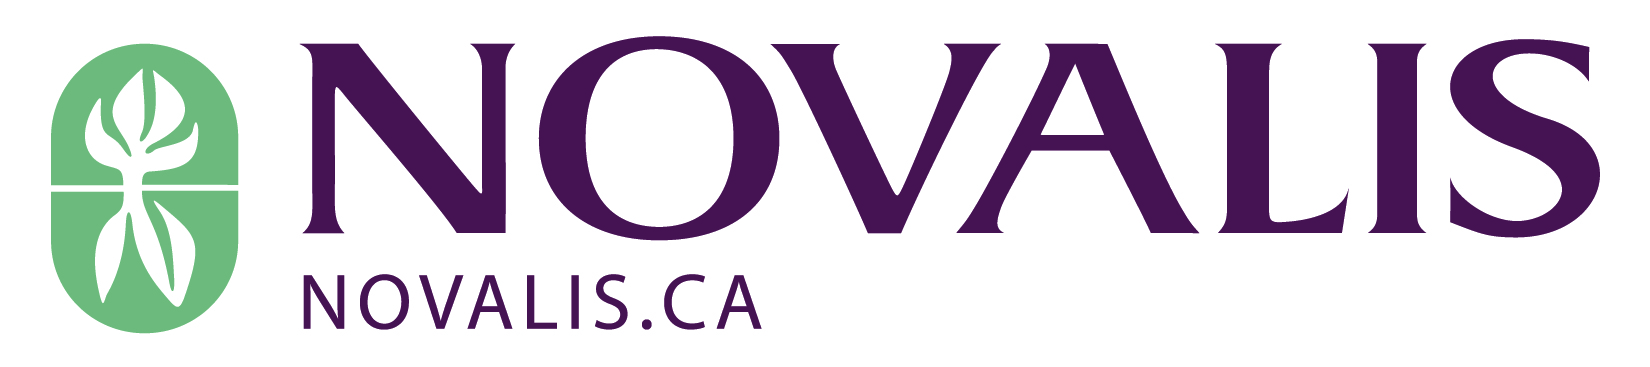 Novalis logo